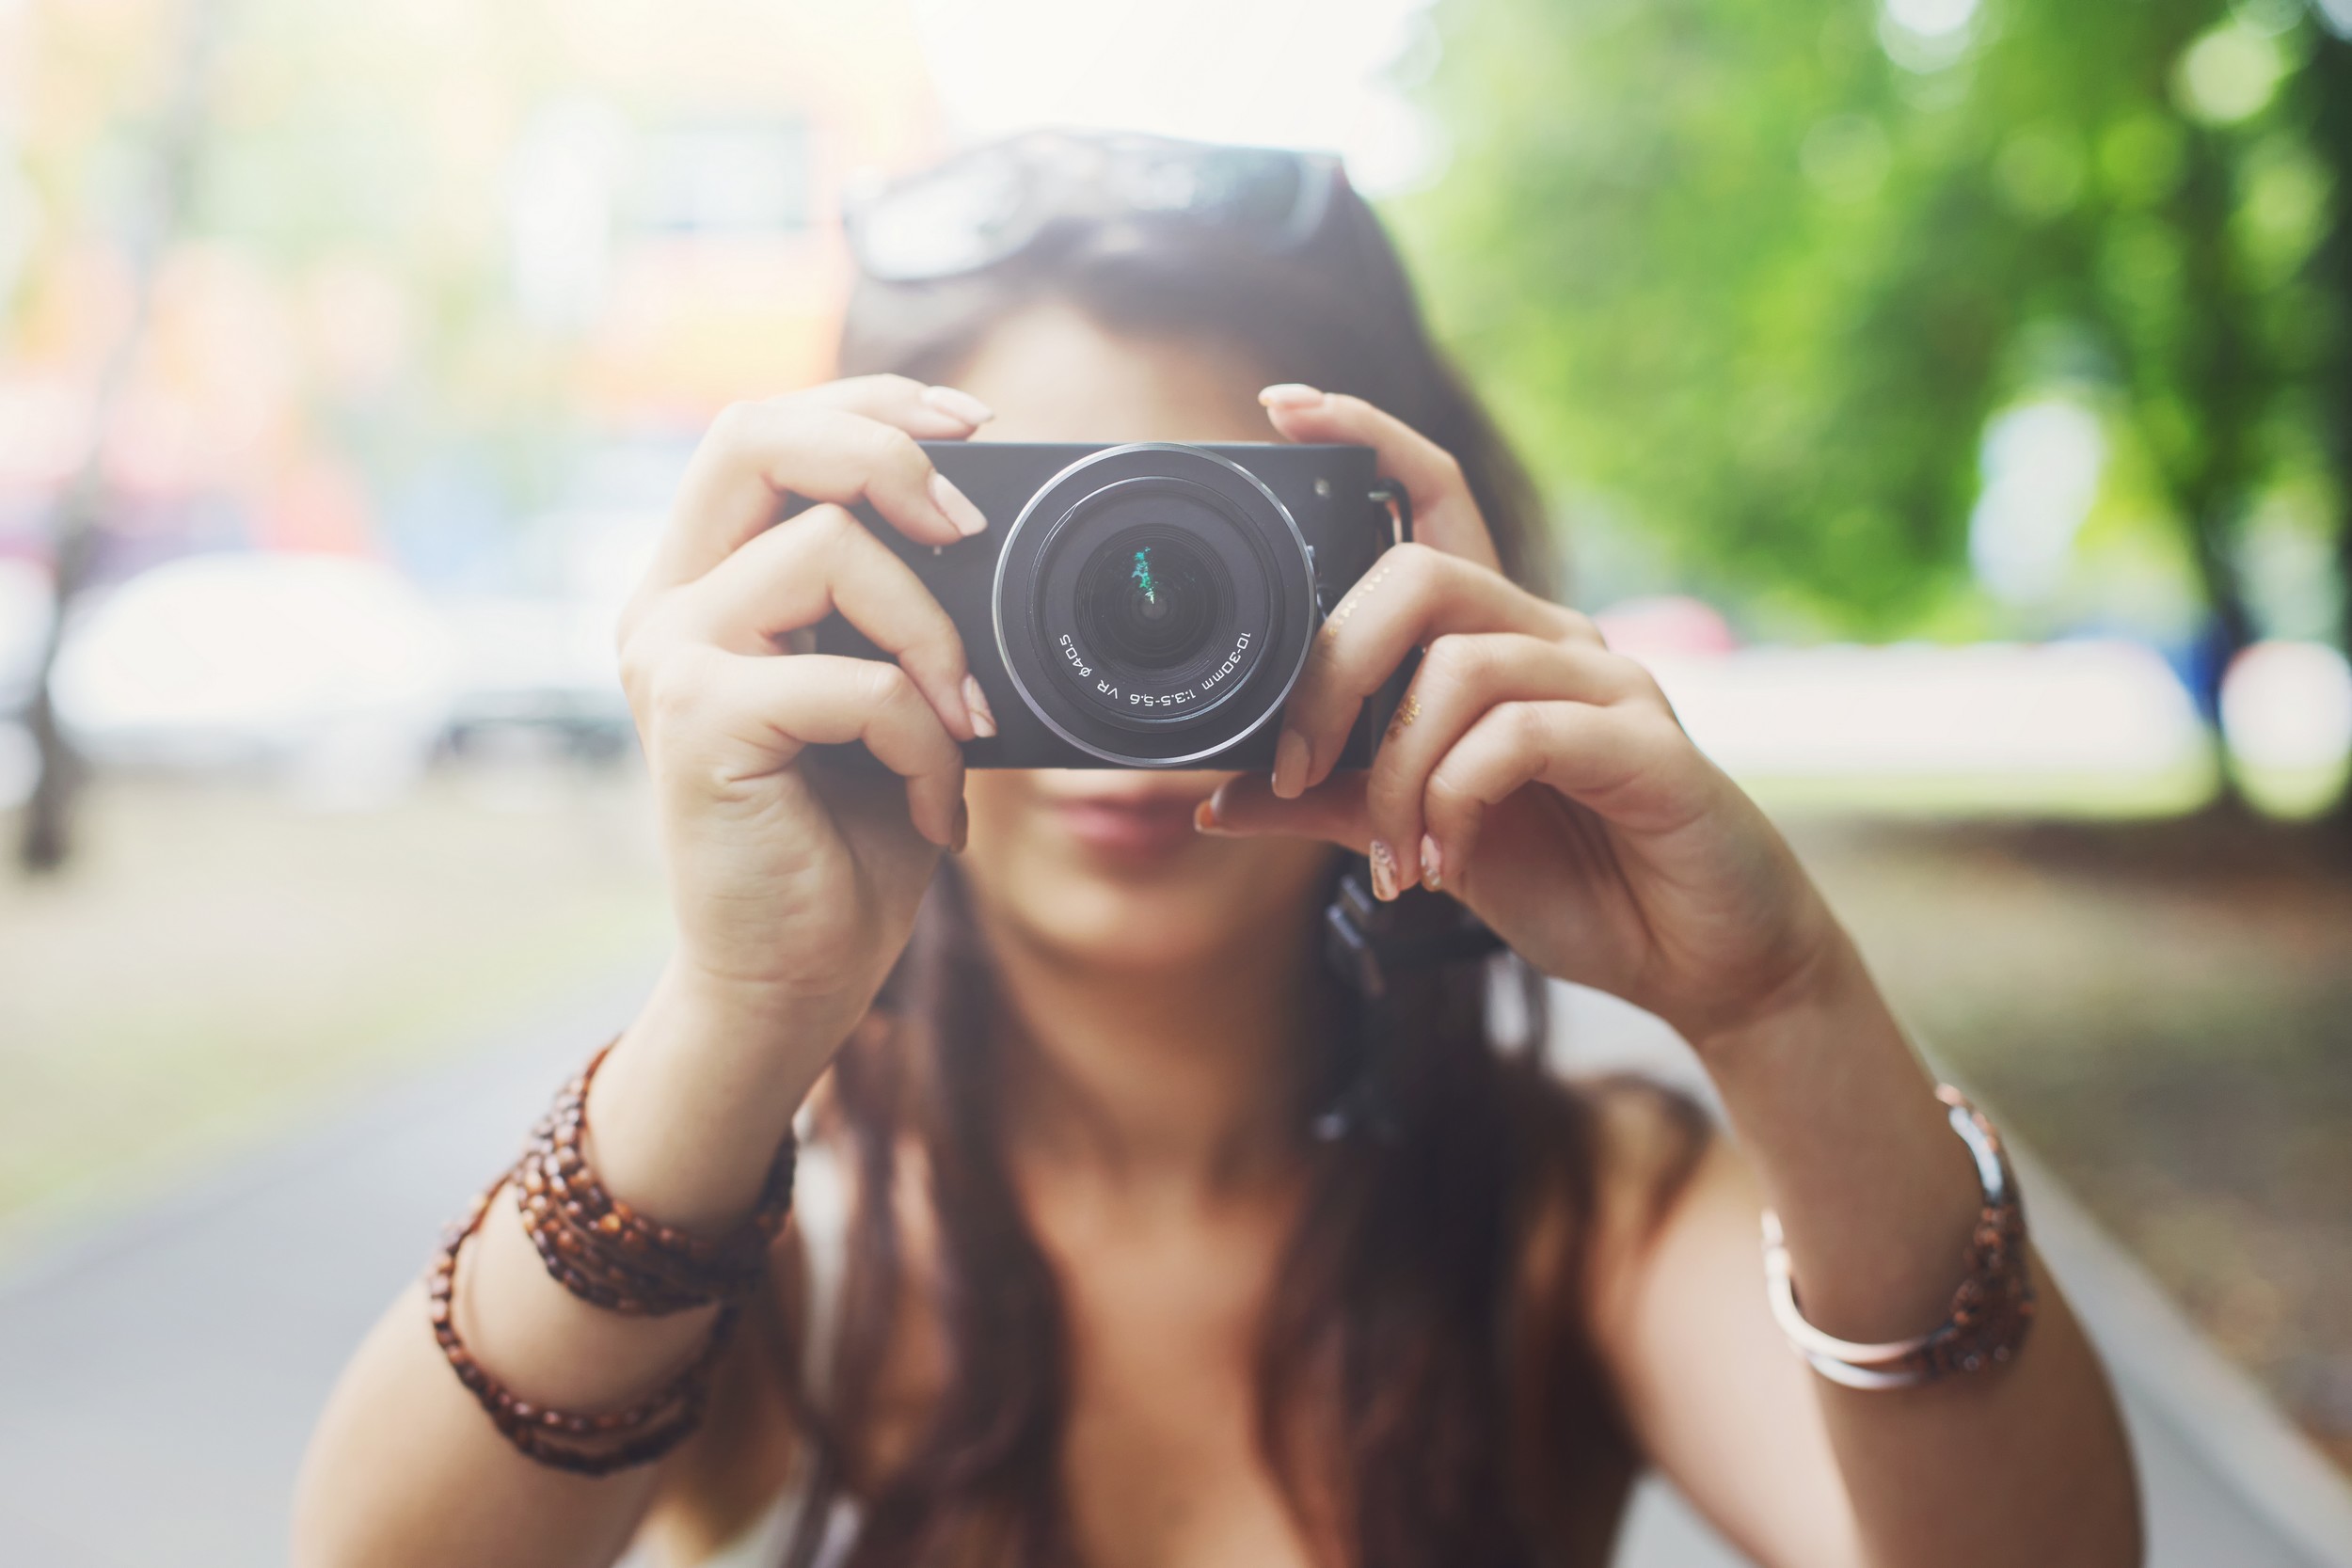 7 rad jak zrobić idealne zdjęcie – poradnik dla amatorów fotografii